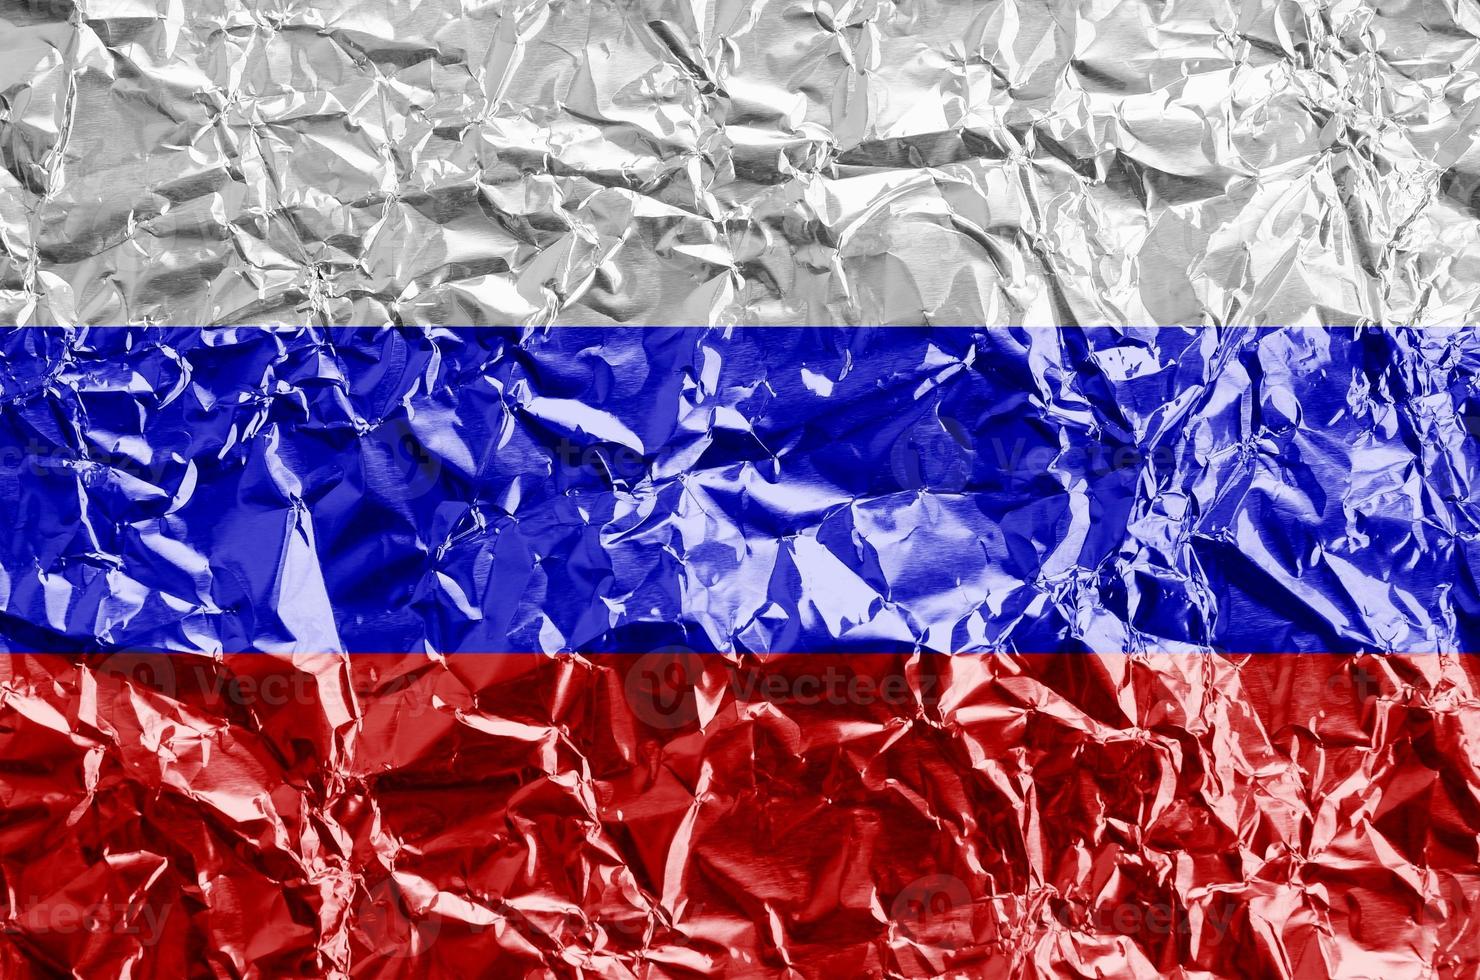 ryssland flagga avbildad i måla färger på skinande skrynkliga aluminium folie närbild. texturerad baner på grov bakgrund foto